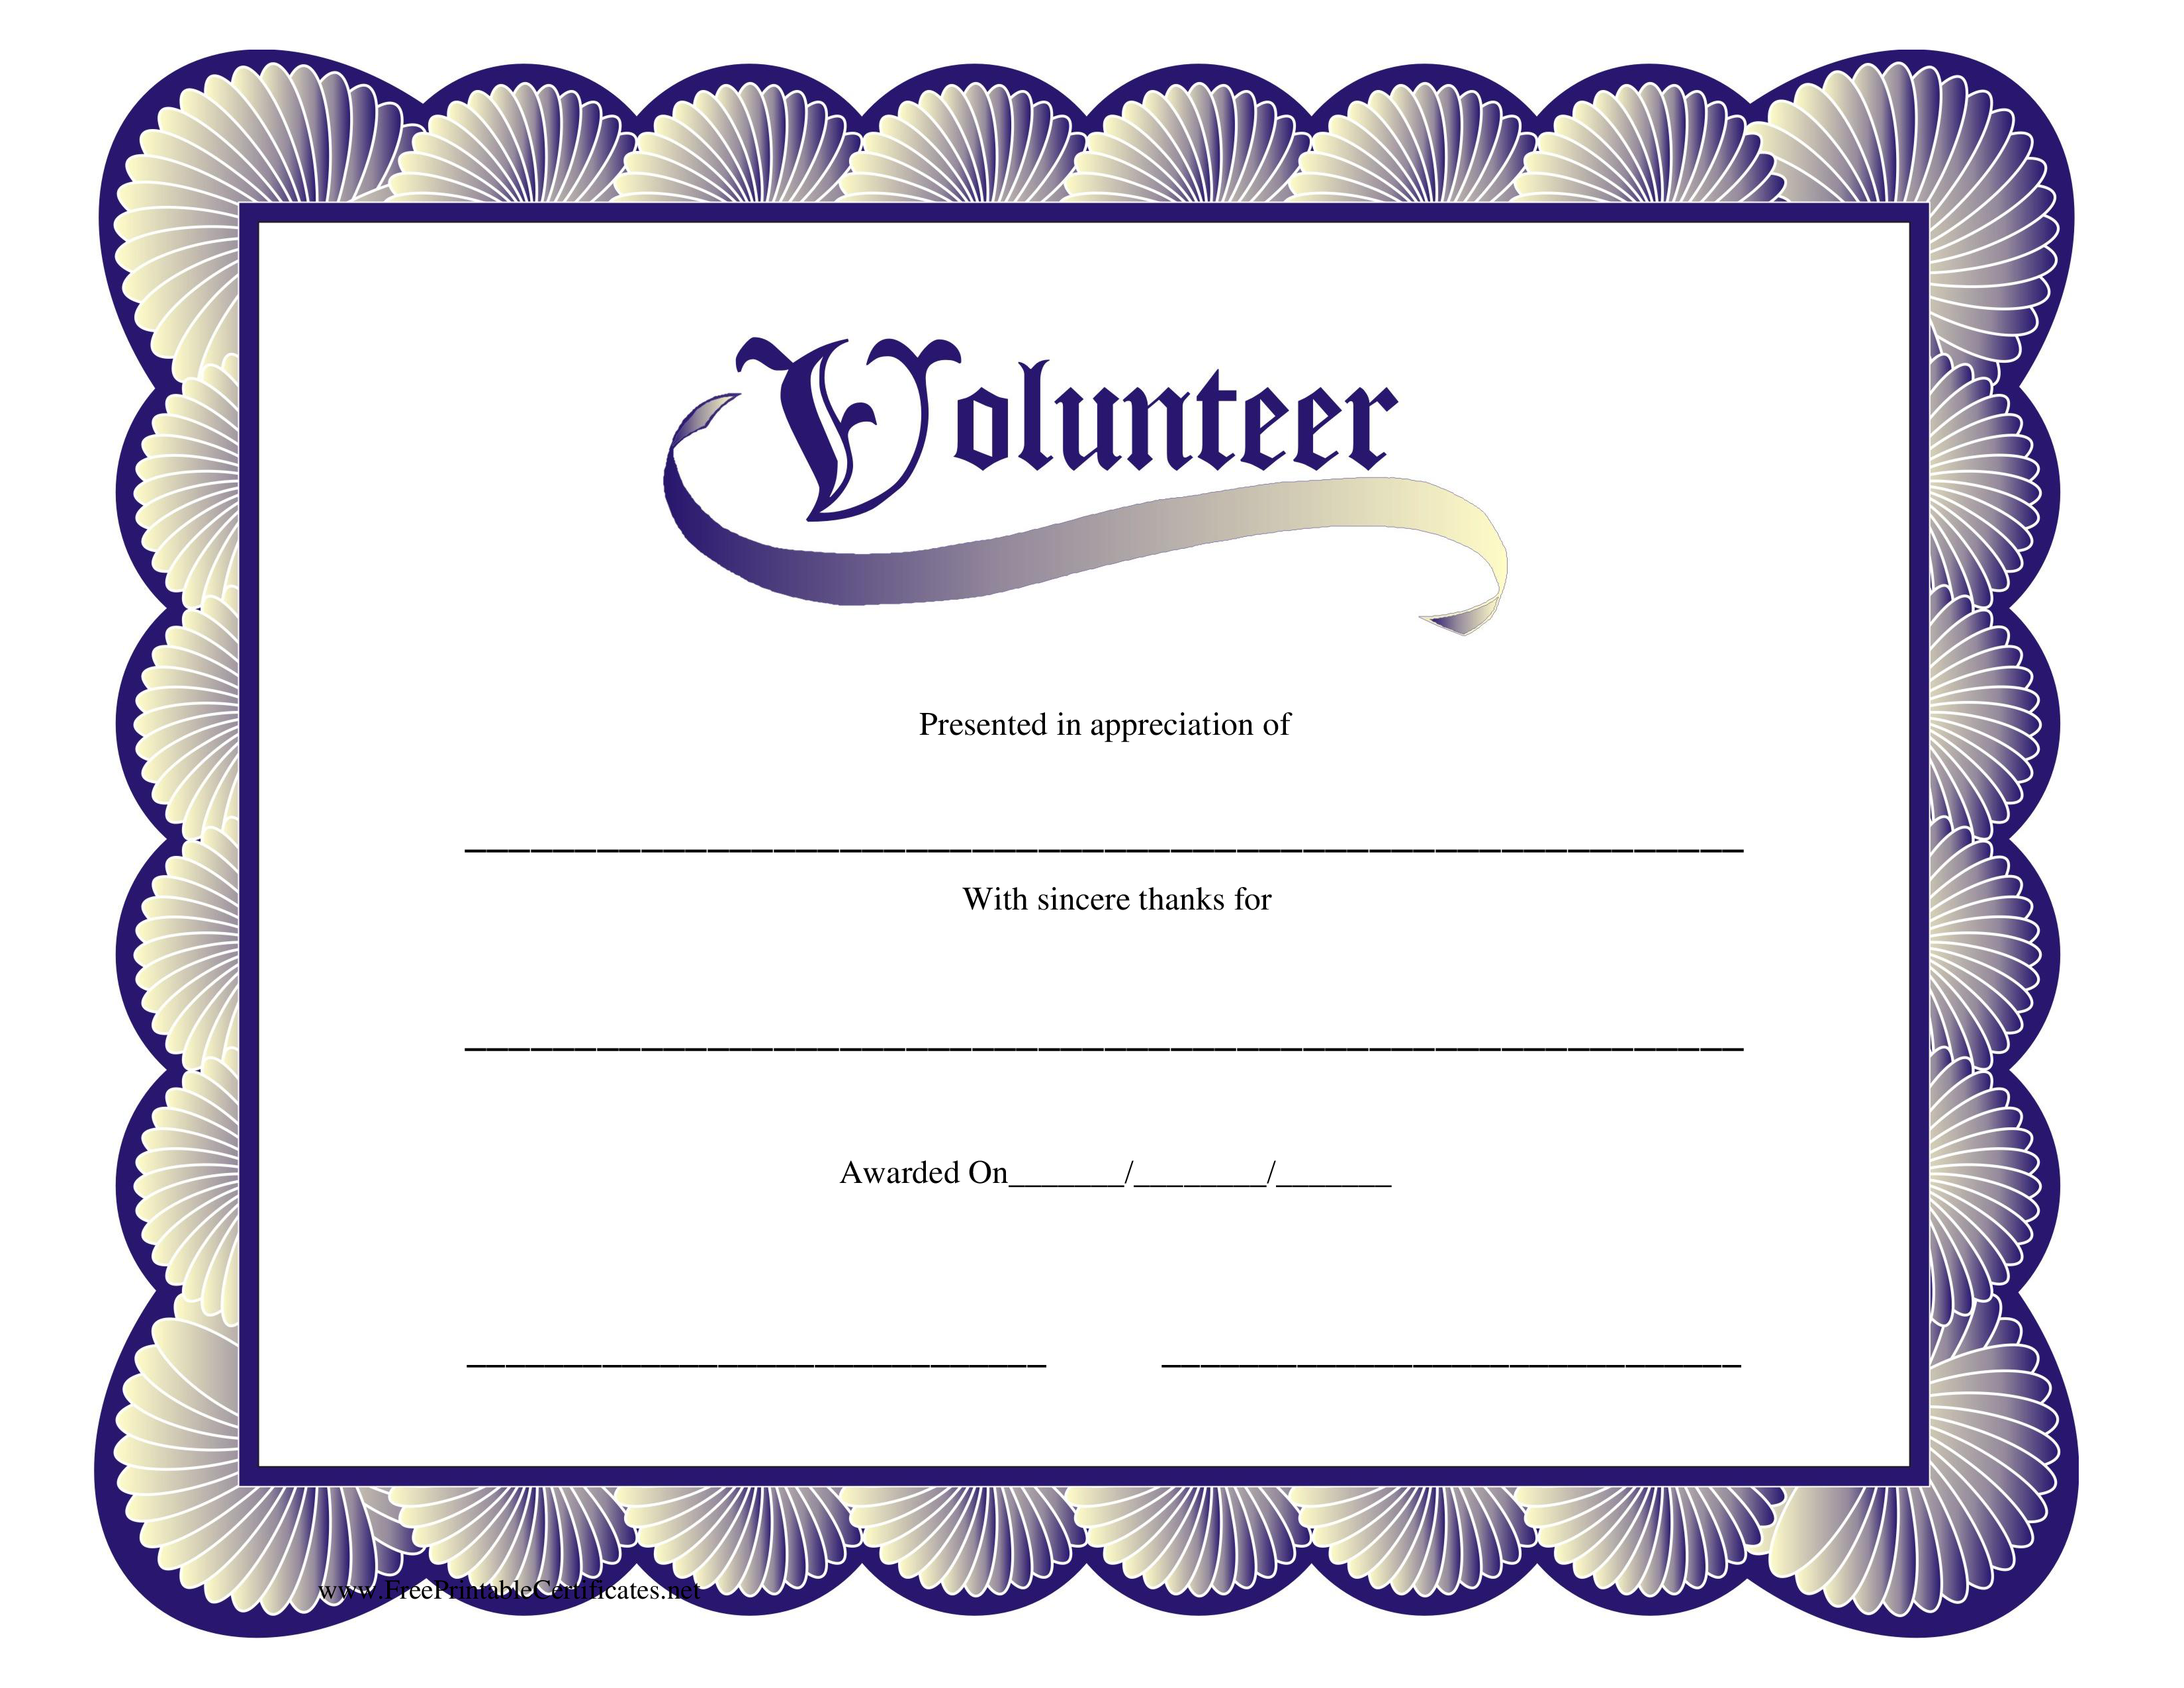 Kostenloses Volunteer Certificate In Volunteer Certificate Templates